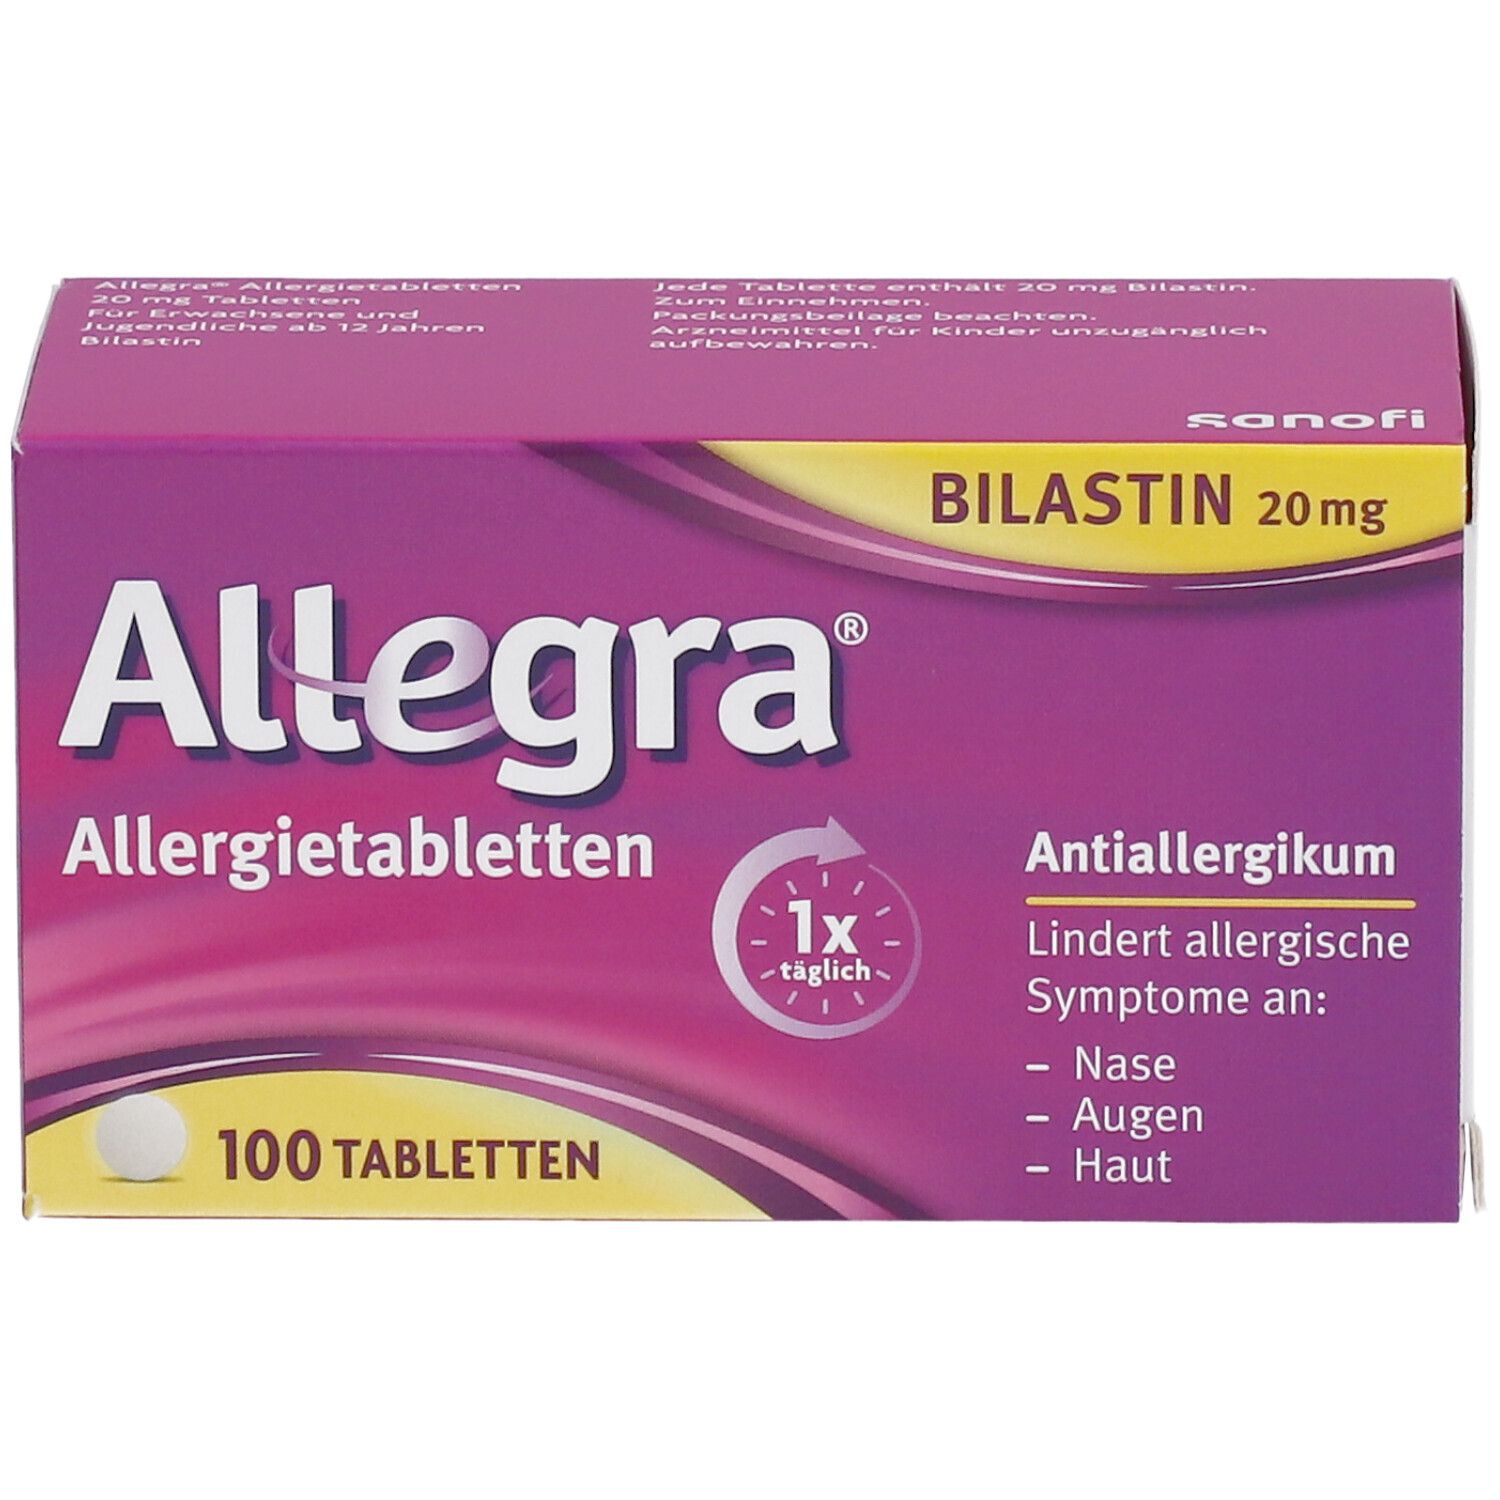 Allegra - schnell bei Heuschnupfen & ganzjährigen Allergien - Jetzt 10% mit dem Code allegra10 sparen*